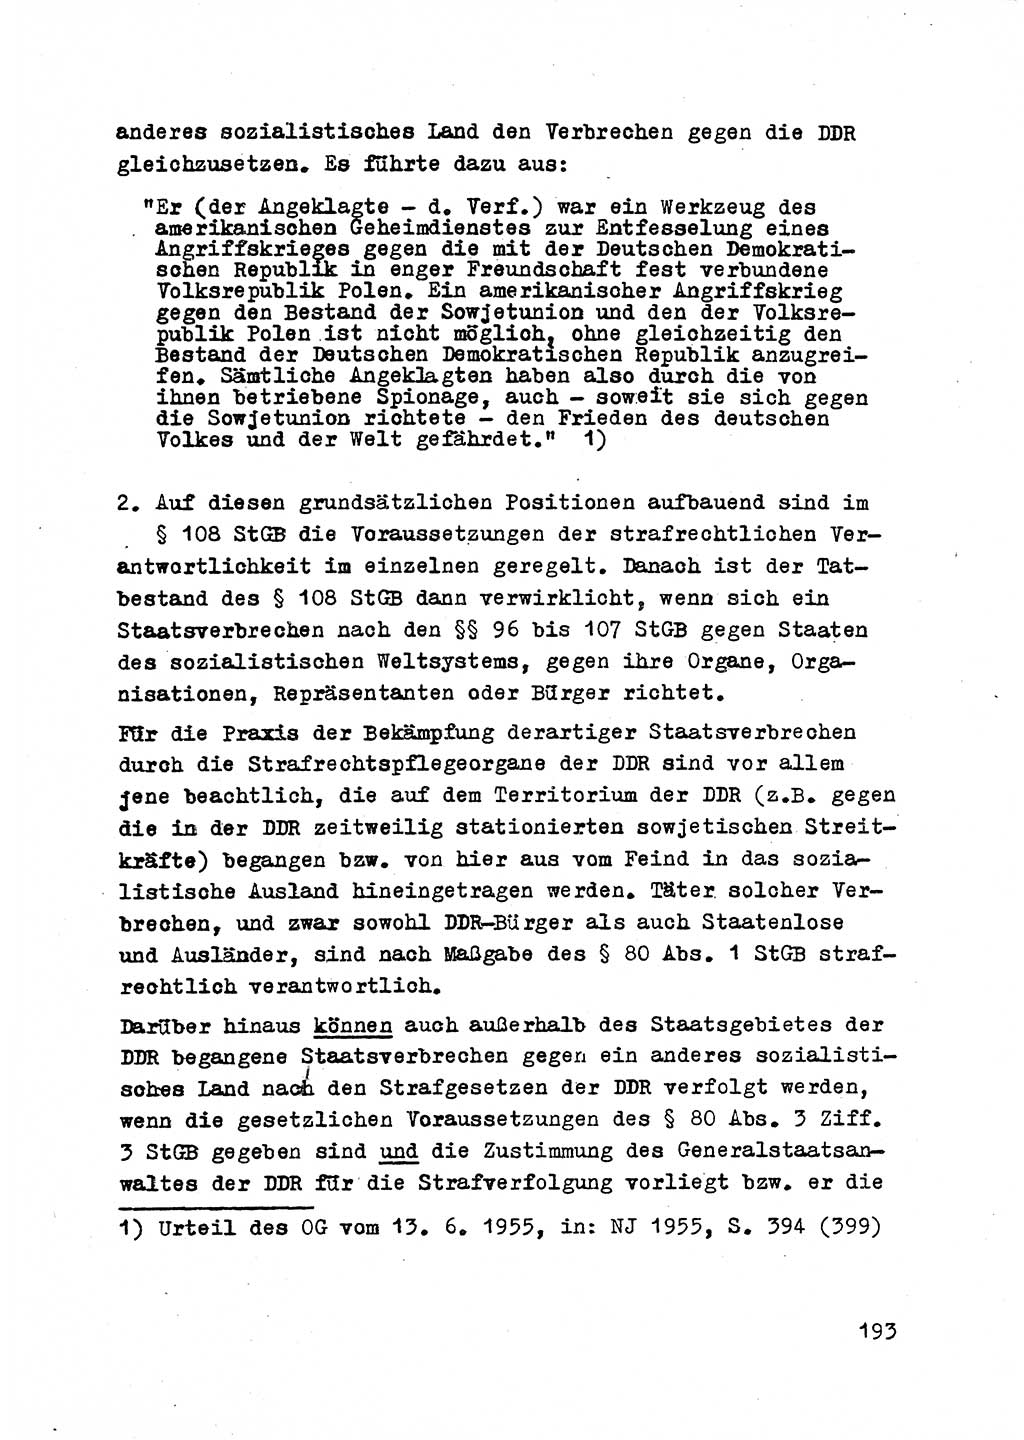 Strafrecht der DDR (Deutsche Demokratische Republik), Besonderer Teil, Lehrmaterial, Heft 2 1969, Seite 193 (Strafr. DDR BT Lehrmat. H. 2 1969, S. 193)